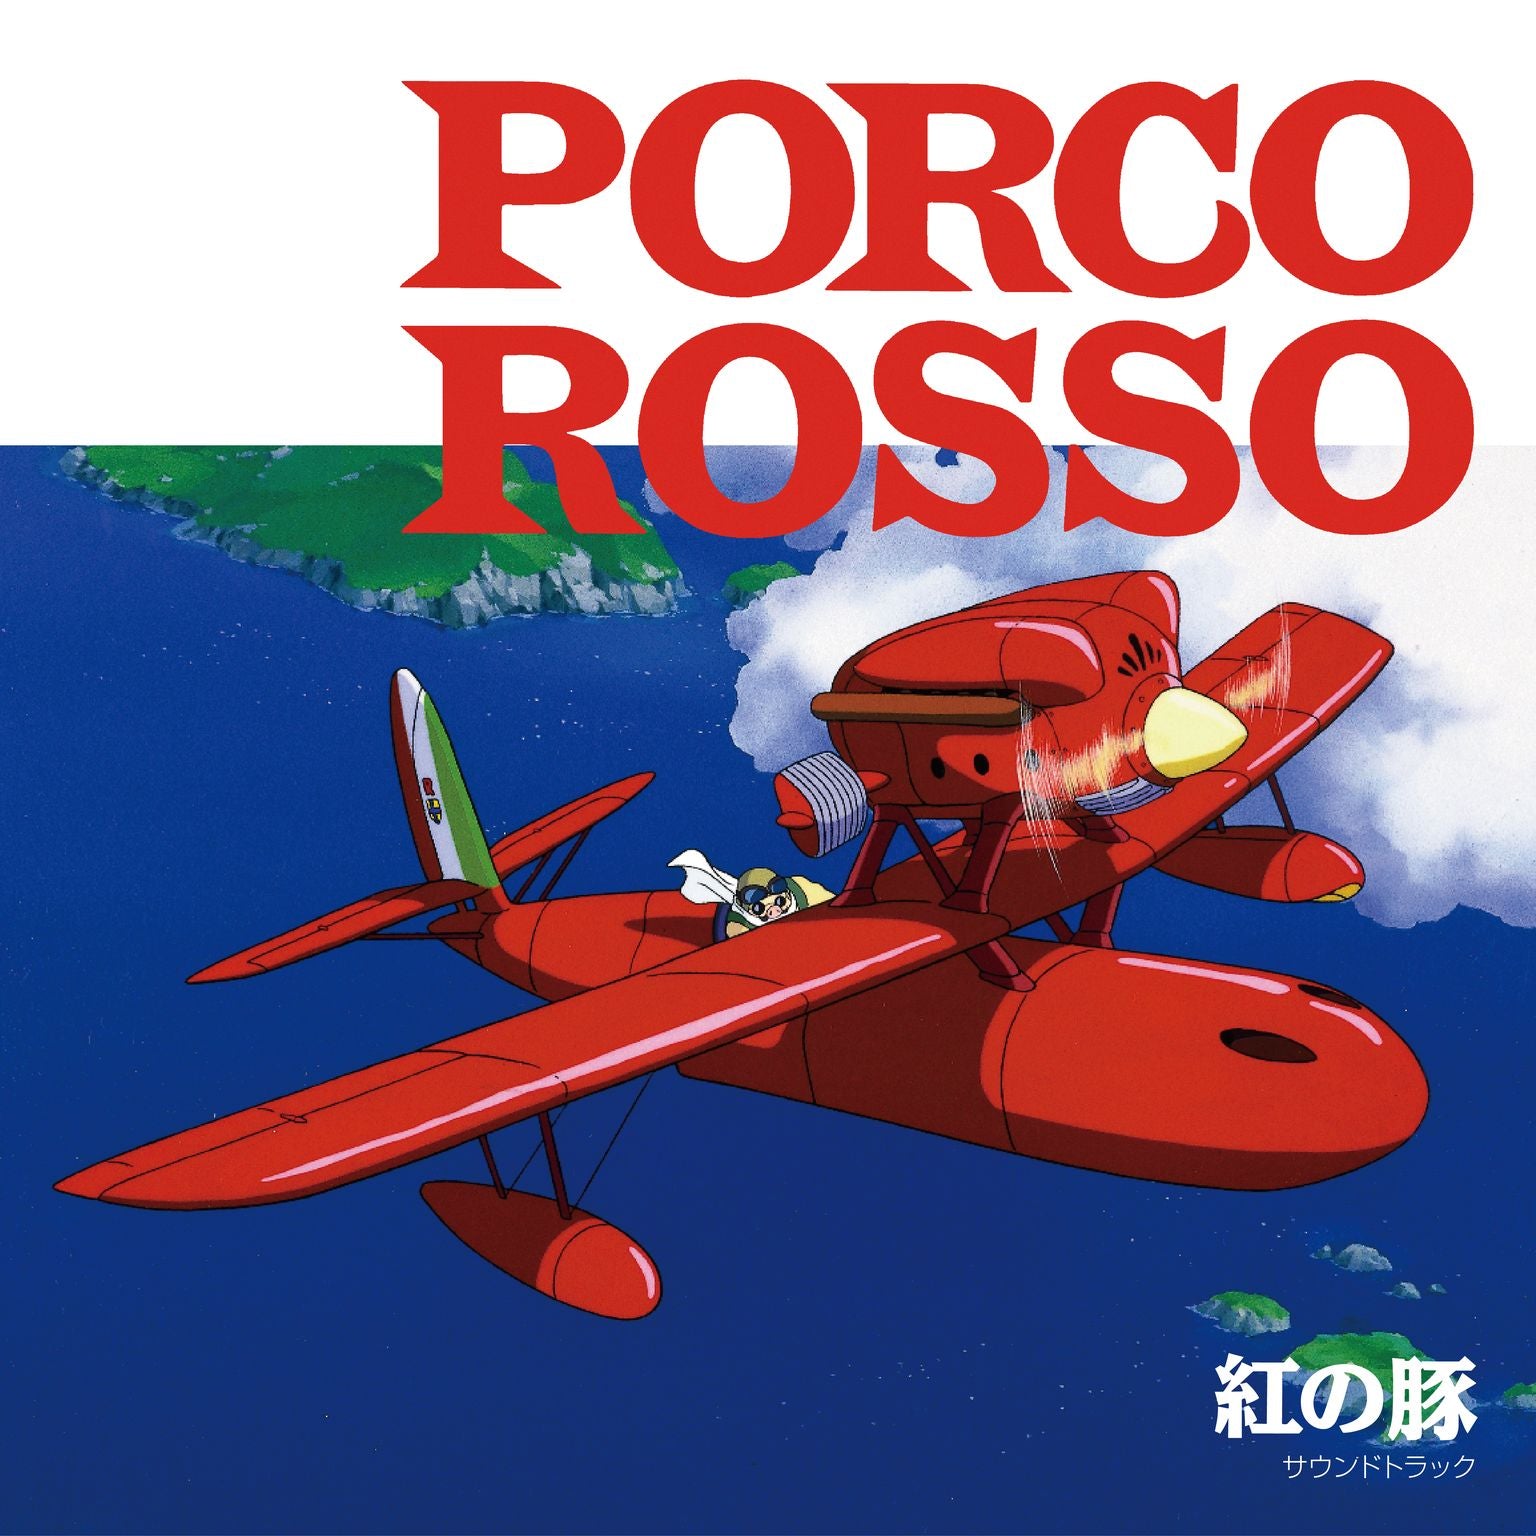 Porco Rosso: Soundtrack – Light in the Attic